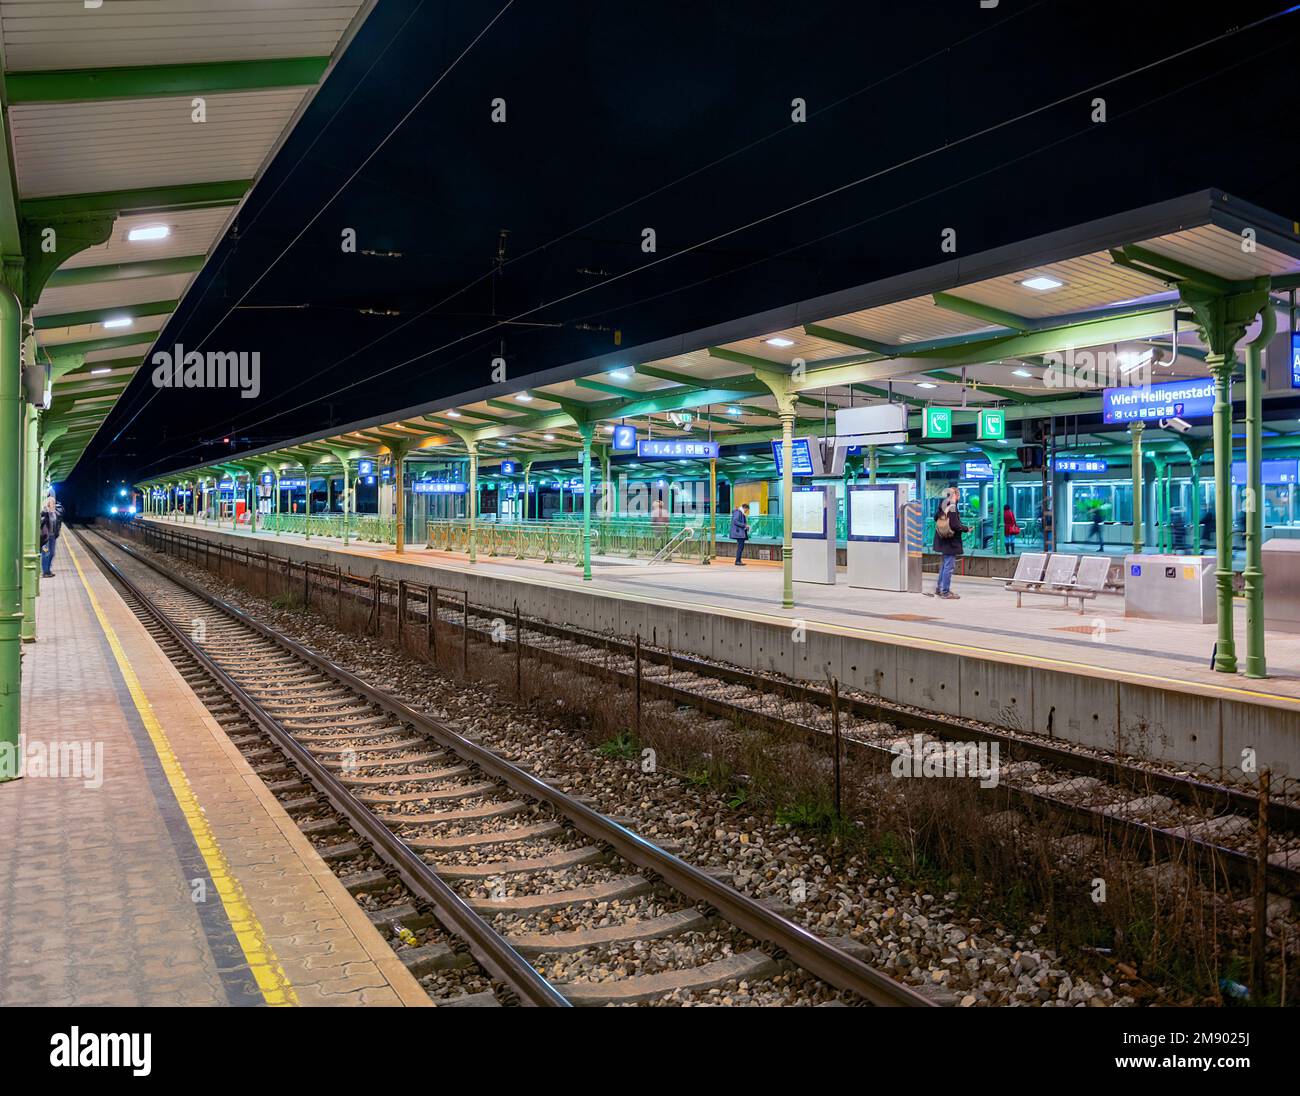 Stazione ferroviaria storica illuminata dal famoso architetto otto Wagner e moderne piattaforme metropolitane a Vienna-Heiligenstadt di notte Foto Stock